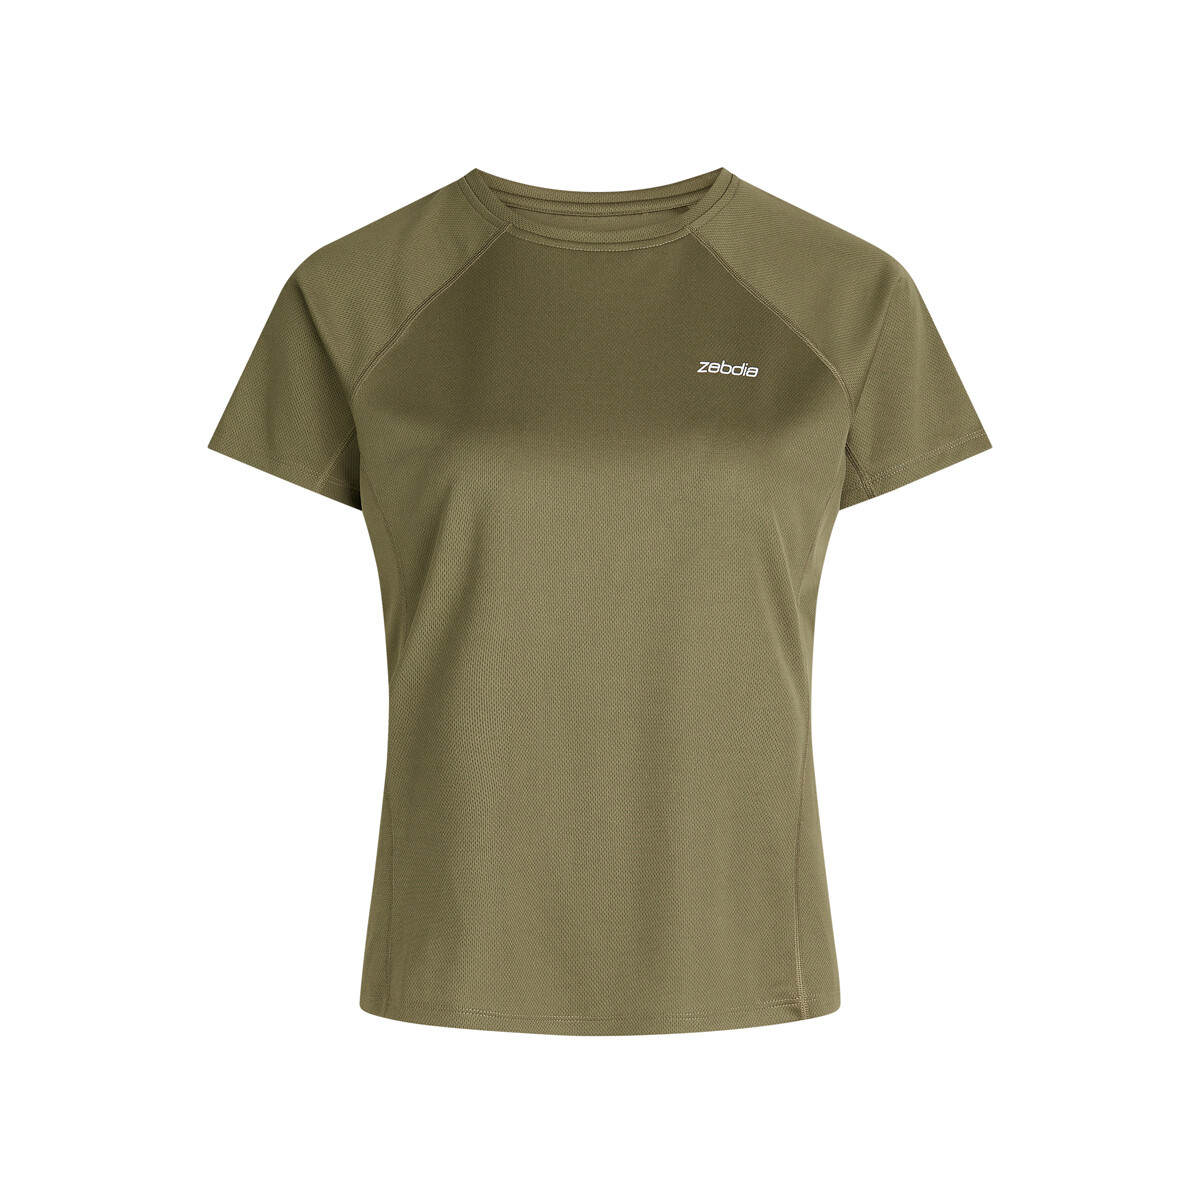 Billede af Zebdia Women Sports T-shirt, Farve: Grøn, Størrelse: XS, Dame